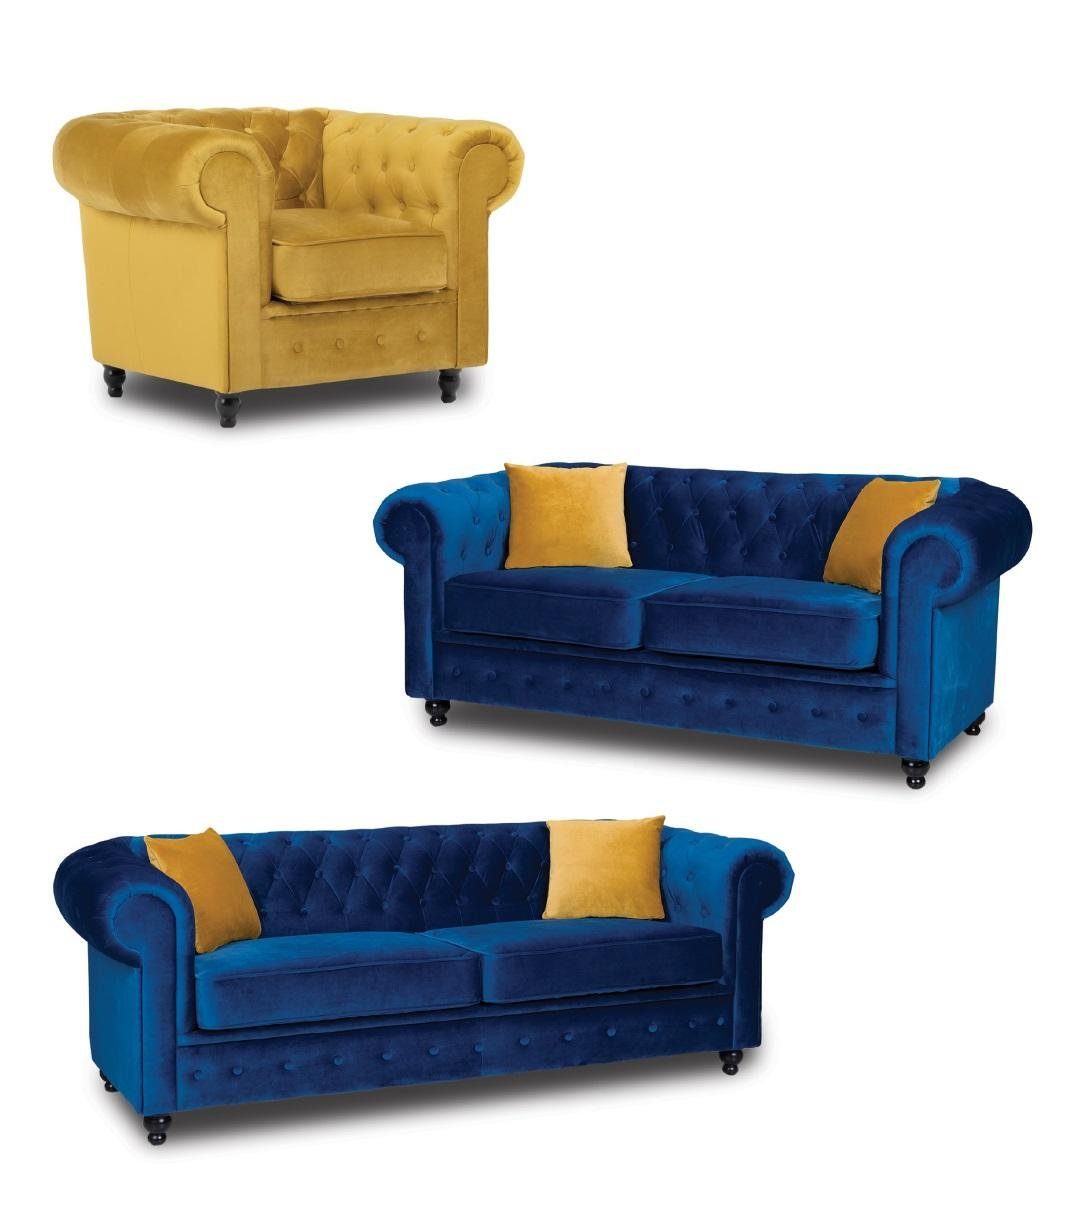 JVmoebel Sofa 3+2+1 Chesterfield Sofagarnitur Couch Möbel Wohnzimmer, Made in Europe